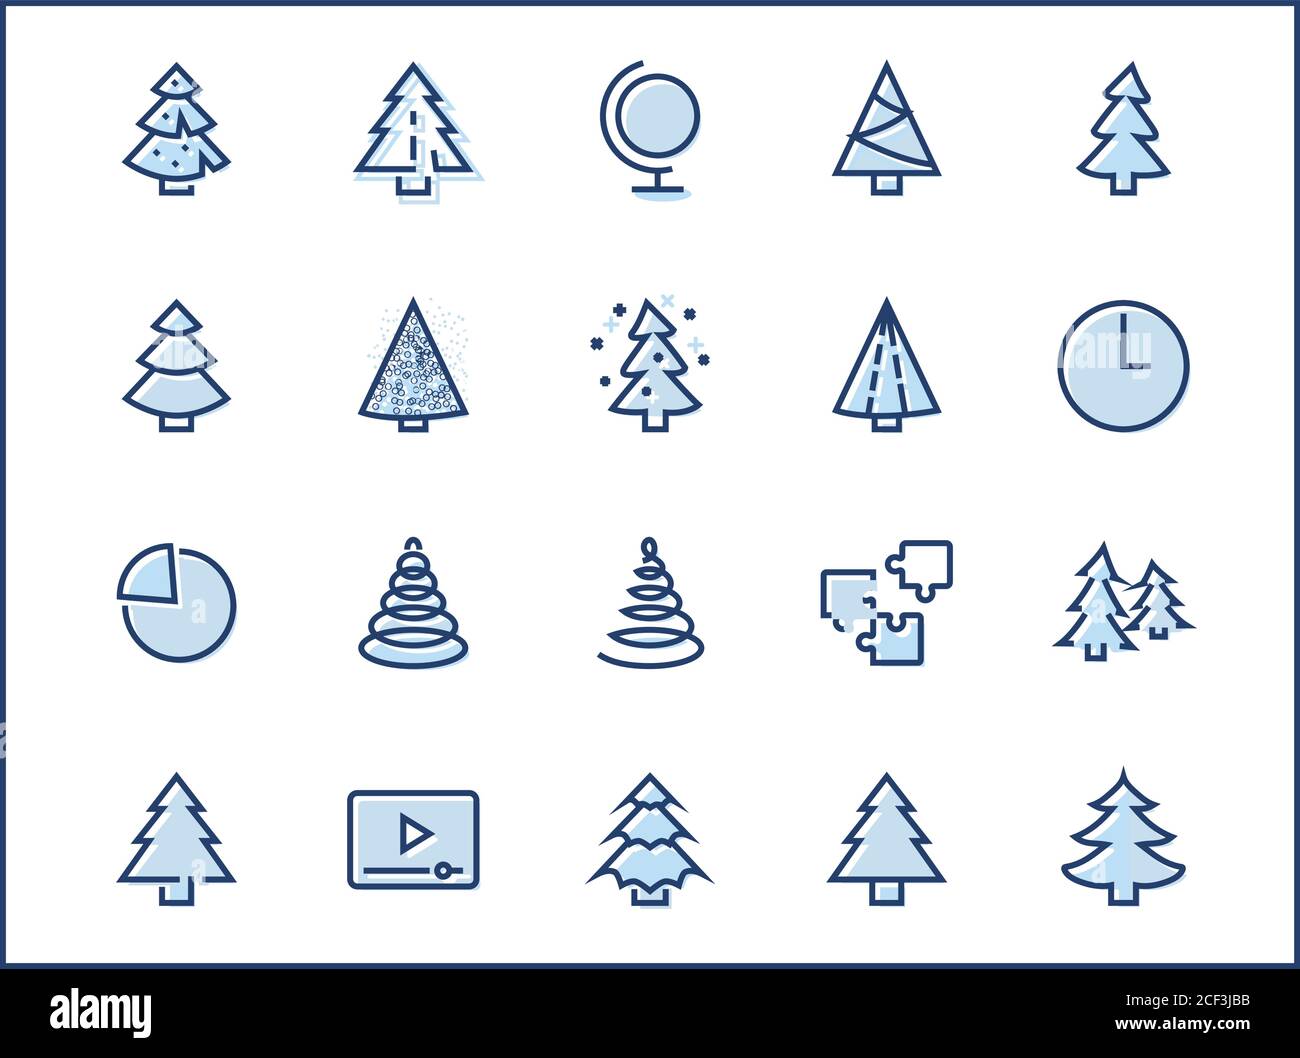 Ensemble d'icônes à lignes fines de sapin de Noël. Icônes linéaires stylisées de neige artificielle, d'épinette, de sapin de boîte. Contour modifiable. 32x32 Pixel Perfect. Illustration de Vecteur